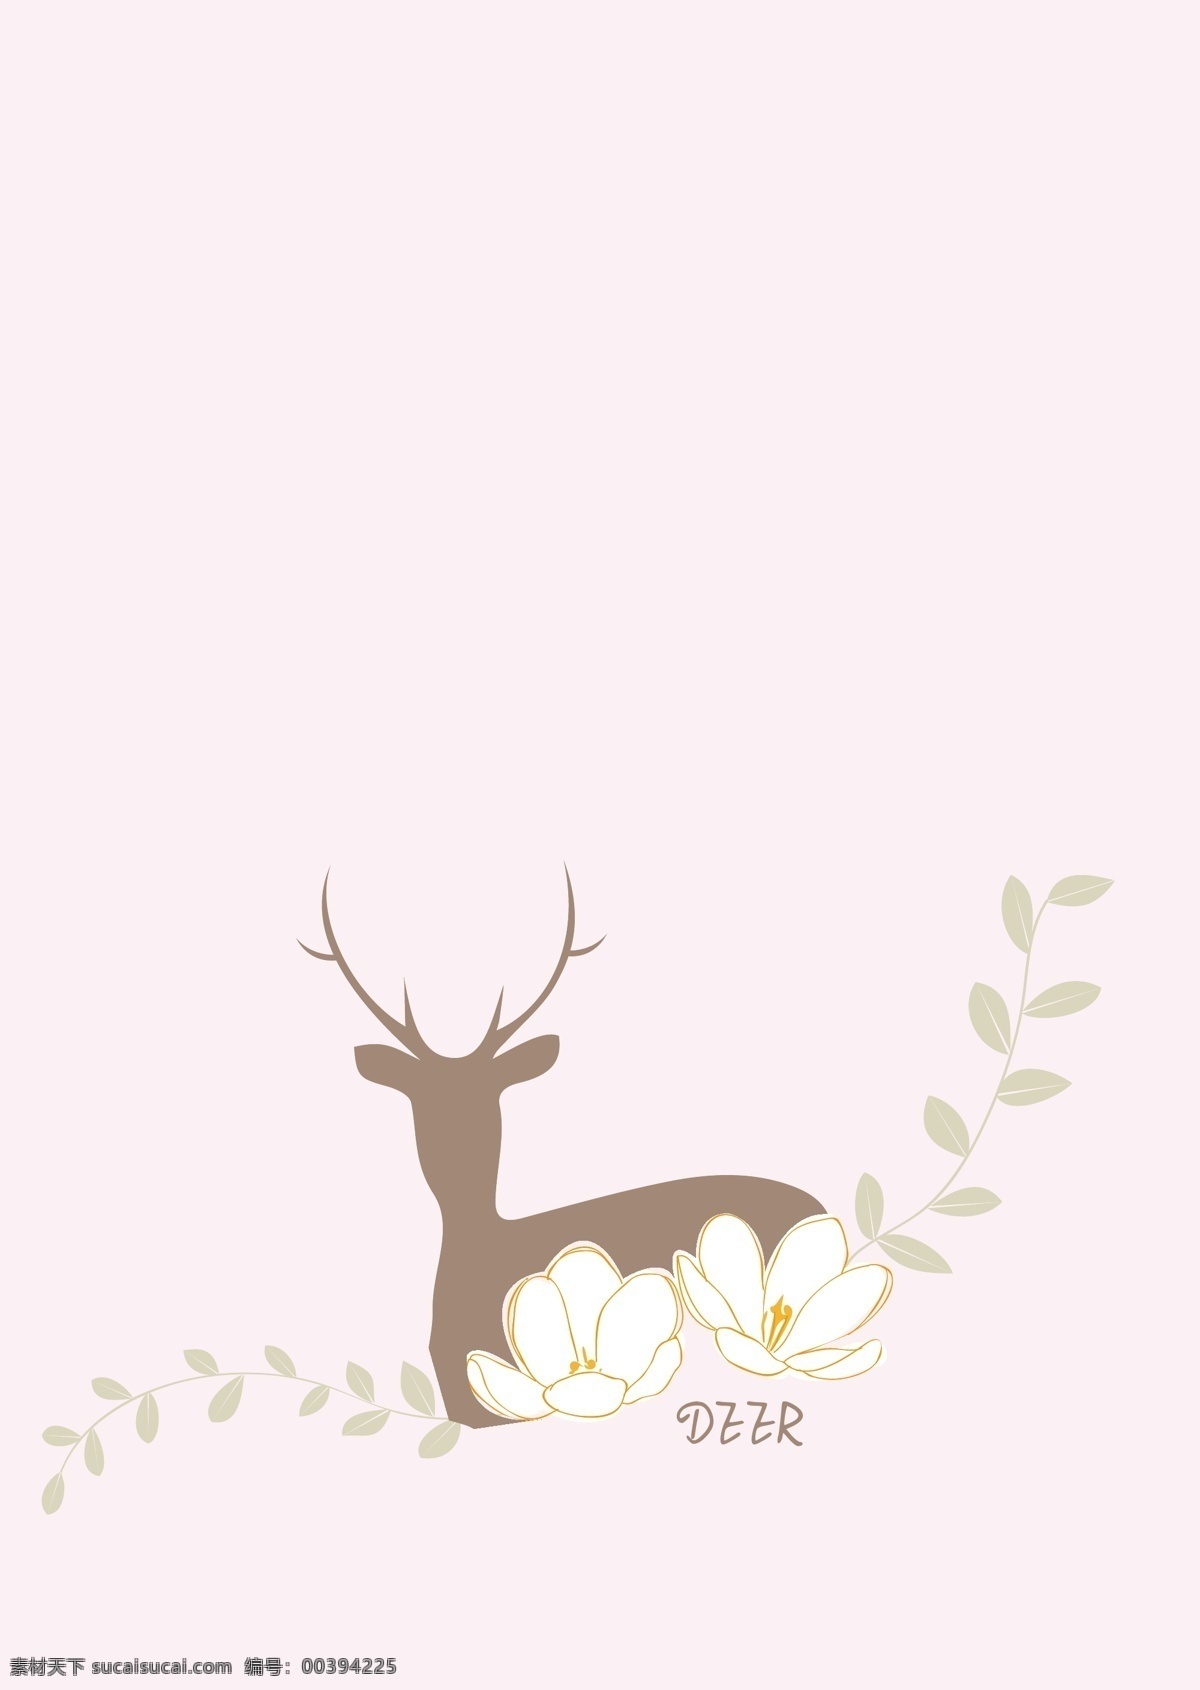 鹿 剪影 花卉 藤蔓 花朵 鲜花 小鹿 背景 装饰 鹿角 绿叶 植物 麋鹿 粉色 大自然 手绘 绘画